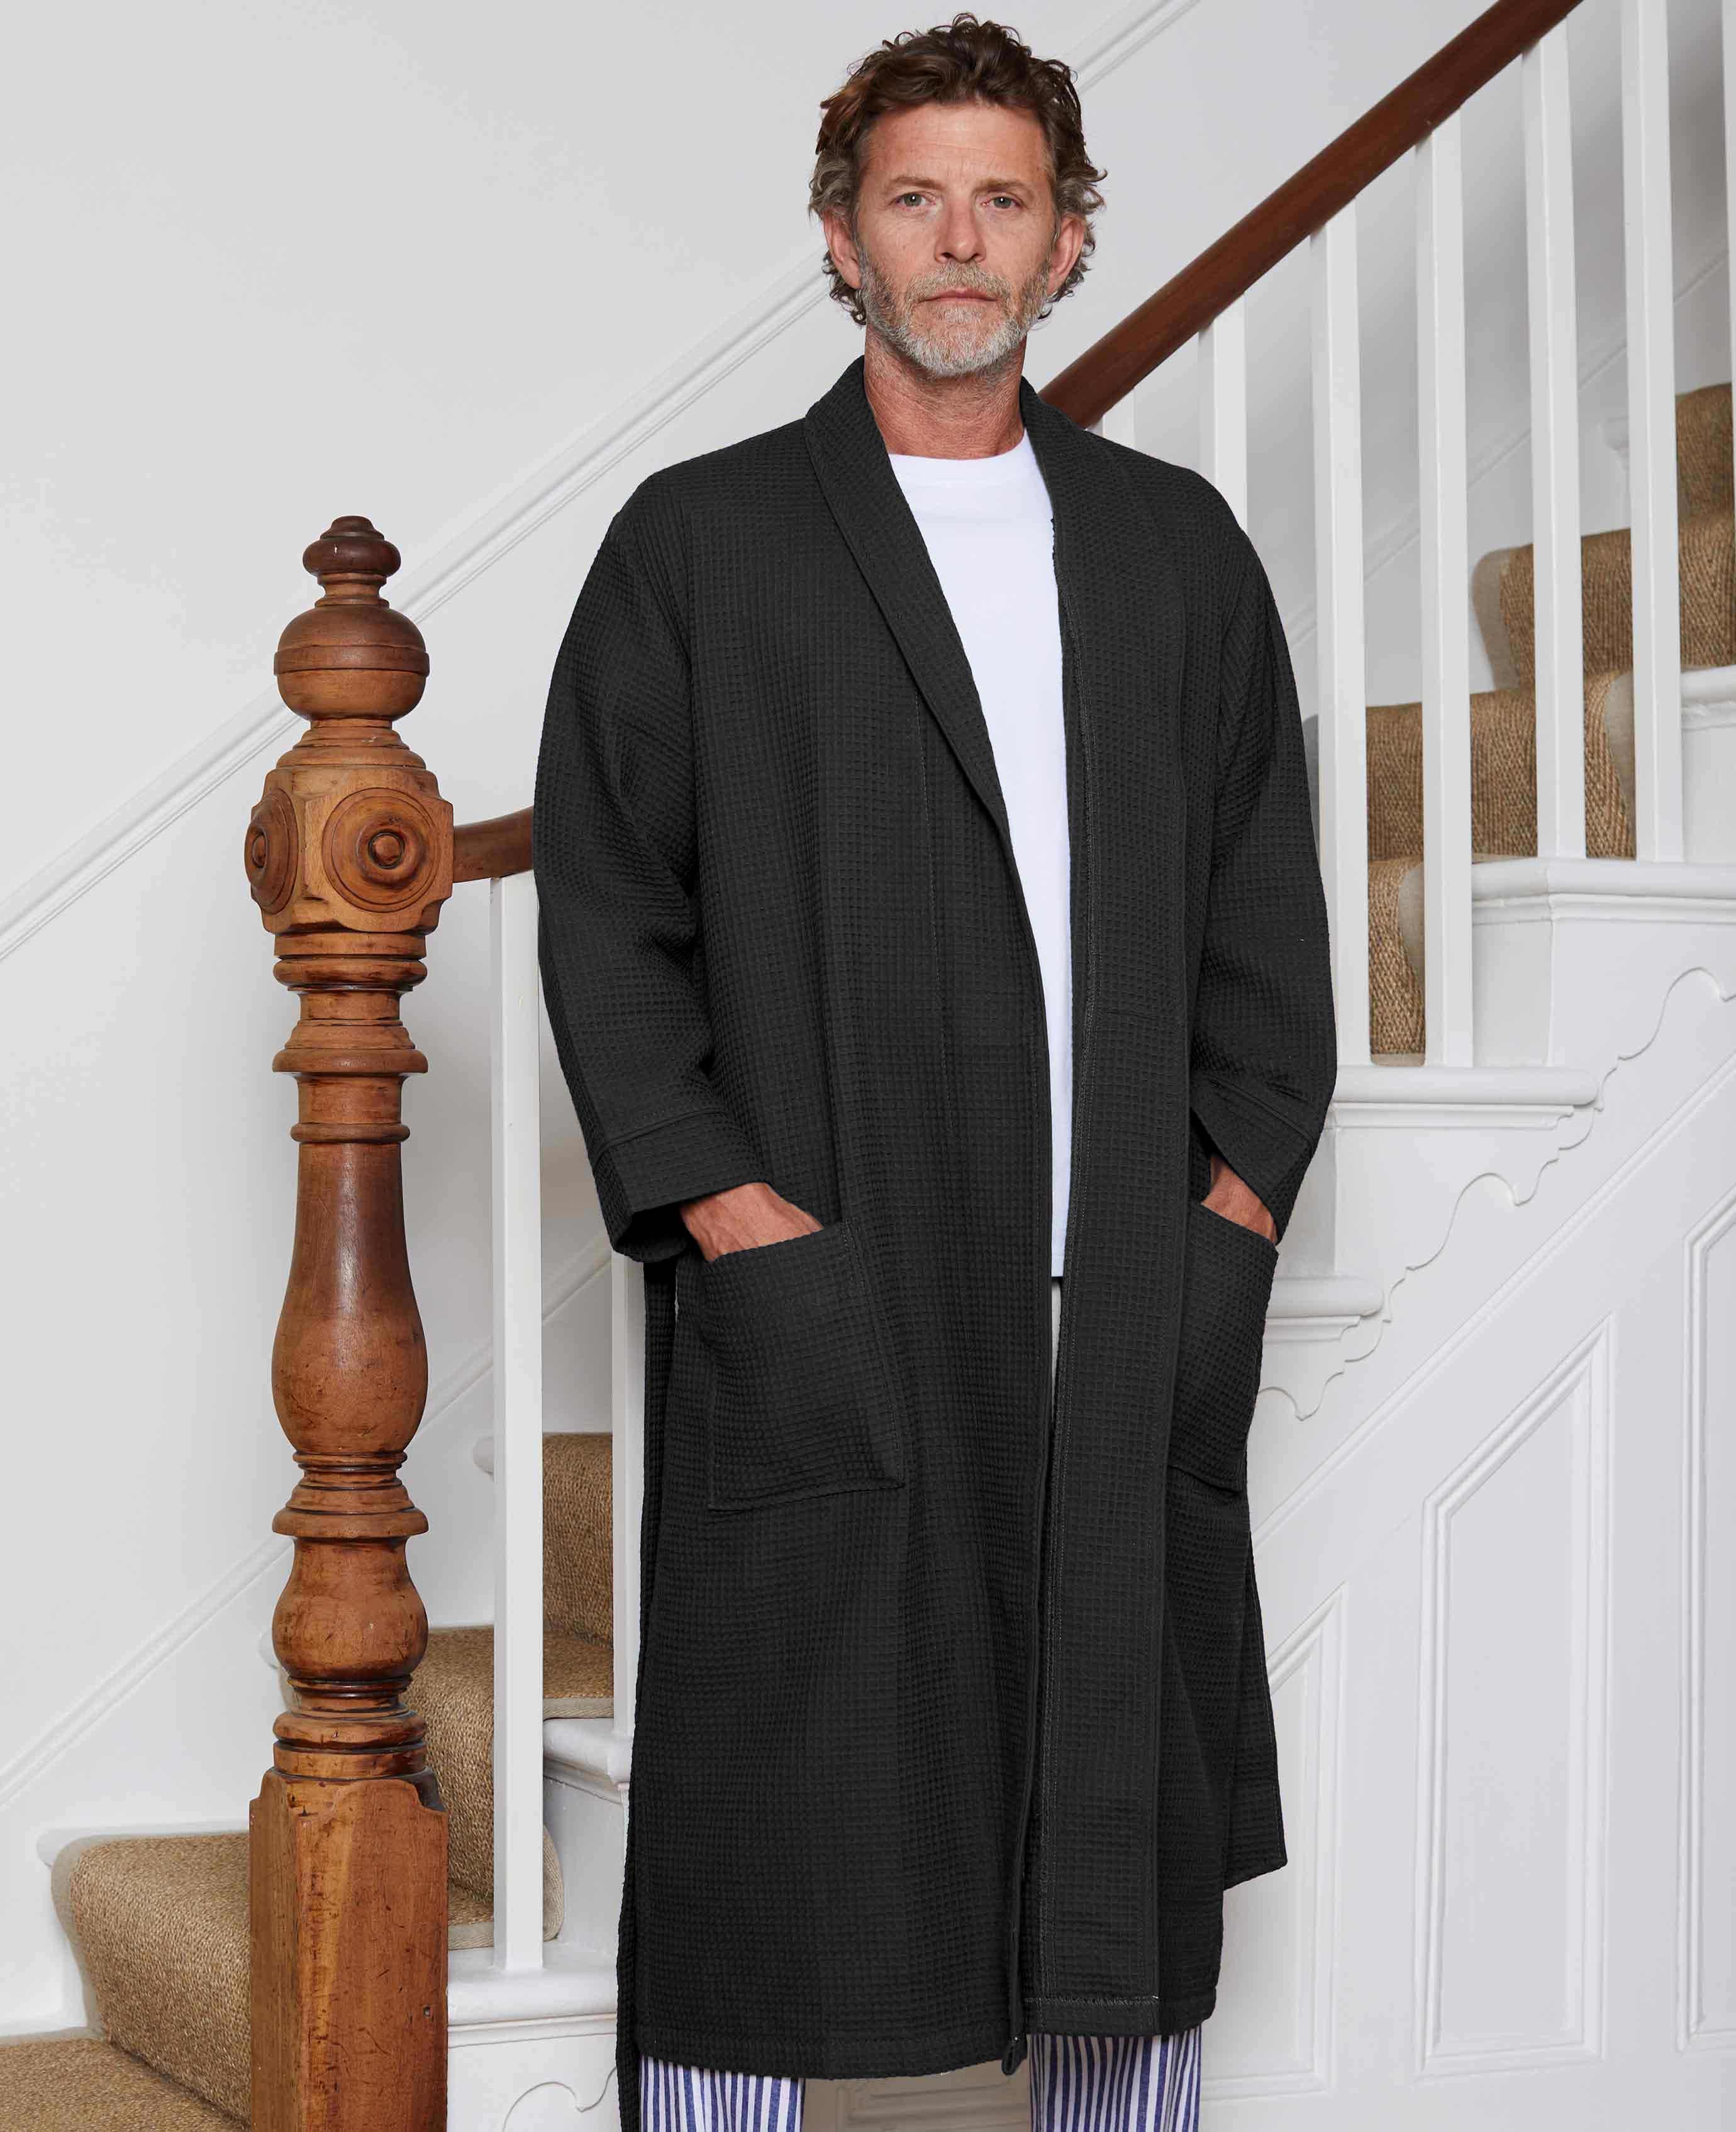 Men :: Robes :: Waffle Robes :: 100% Turkish Cotton Black Waffle Kimono Robe  - Wholesale bathrobes, Spa robes, Kids robes, Cotton robes, Spa Slippers,  Wholesale Towels